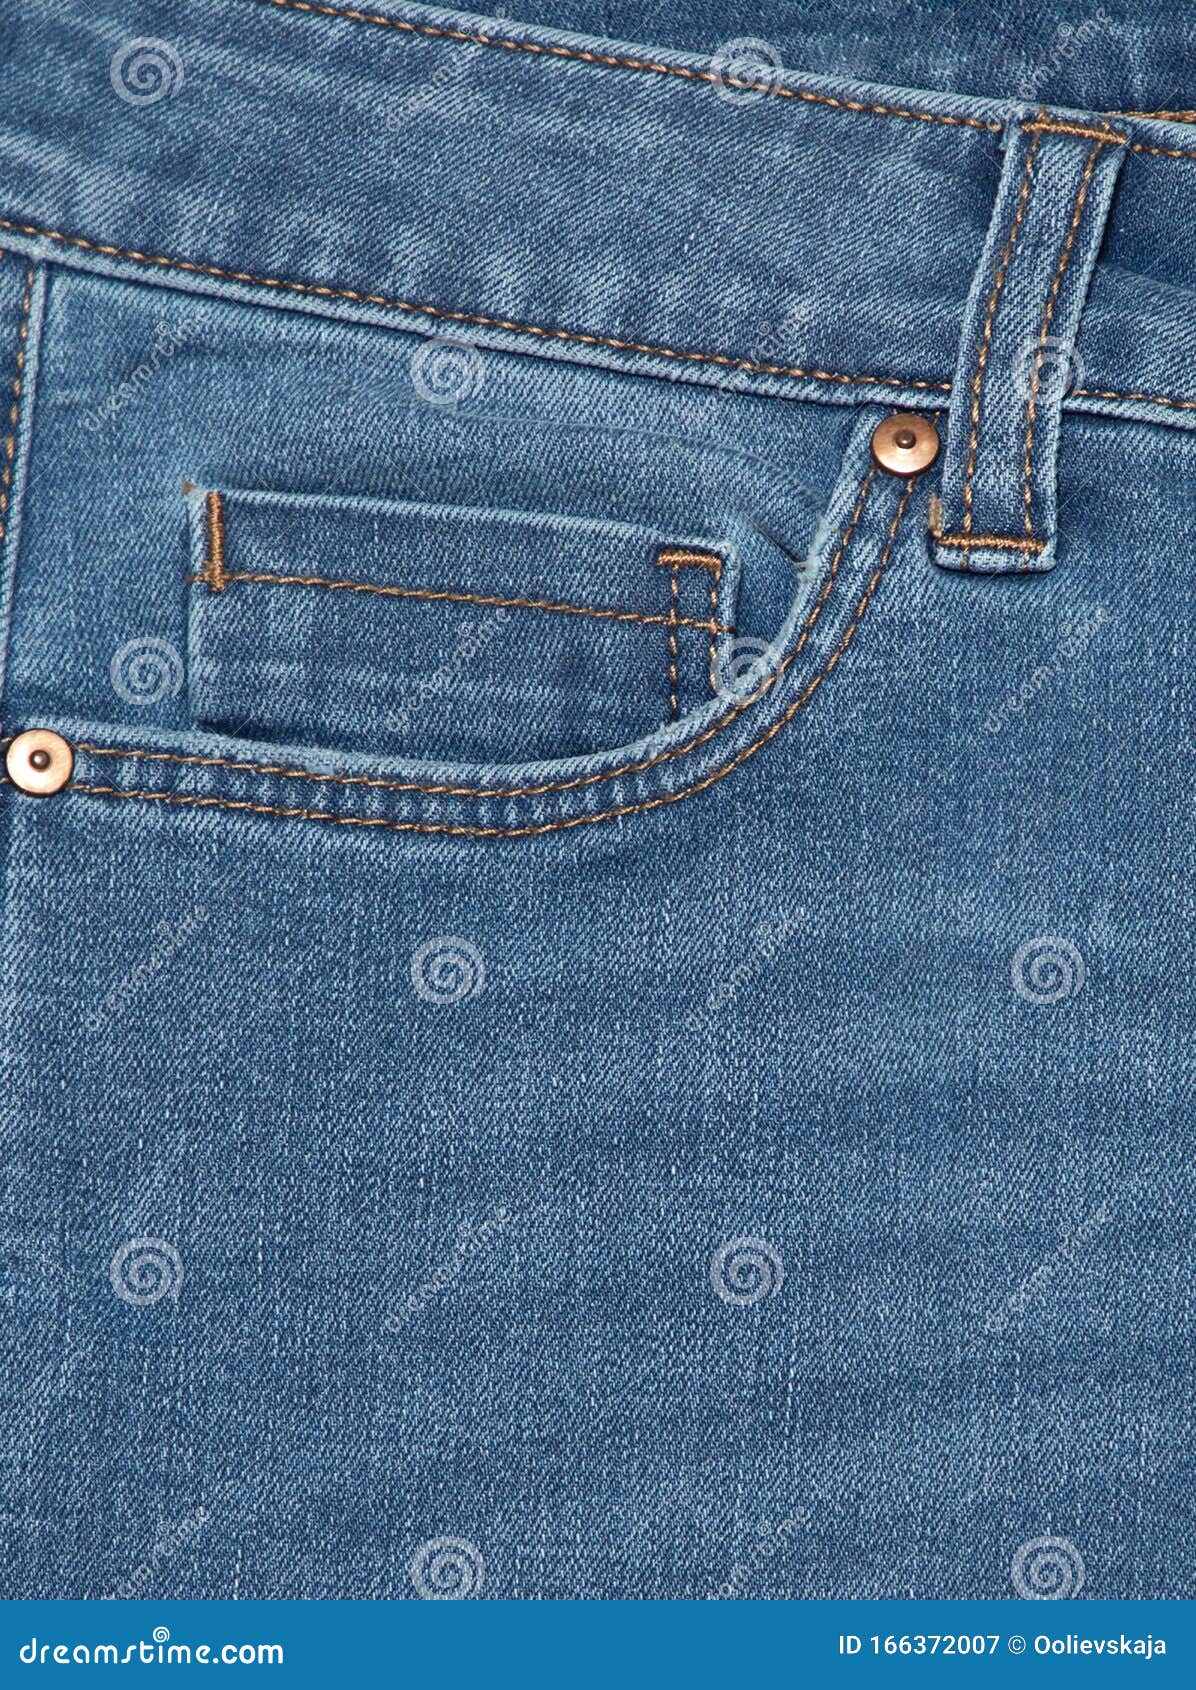 Blaue Jeans Detail Der Vintage Blauen Jeans Textur Mit Tasche Pocket ...